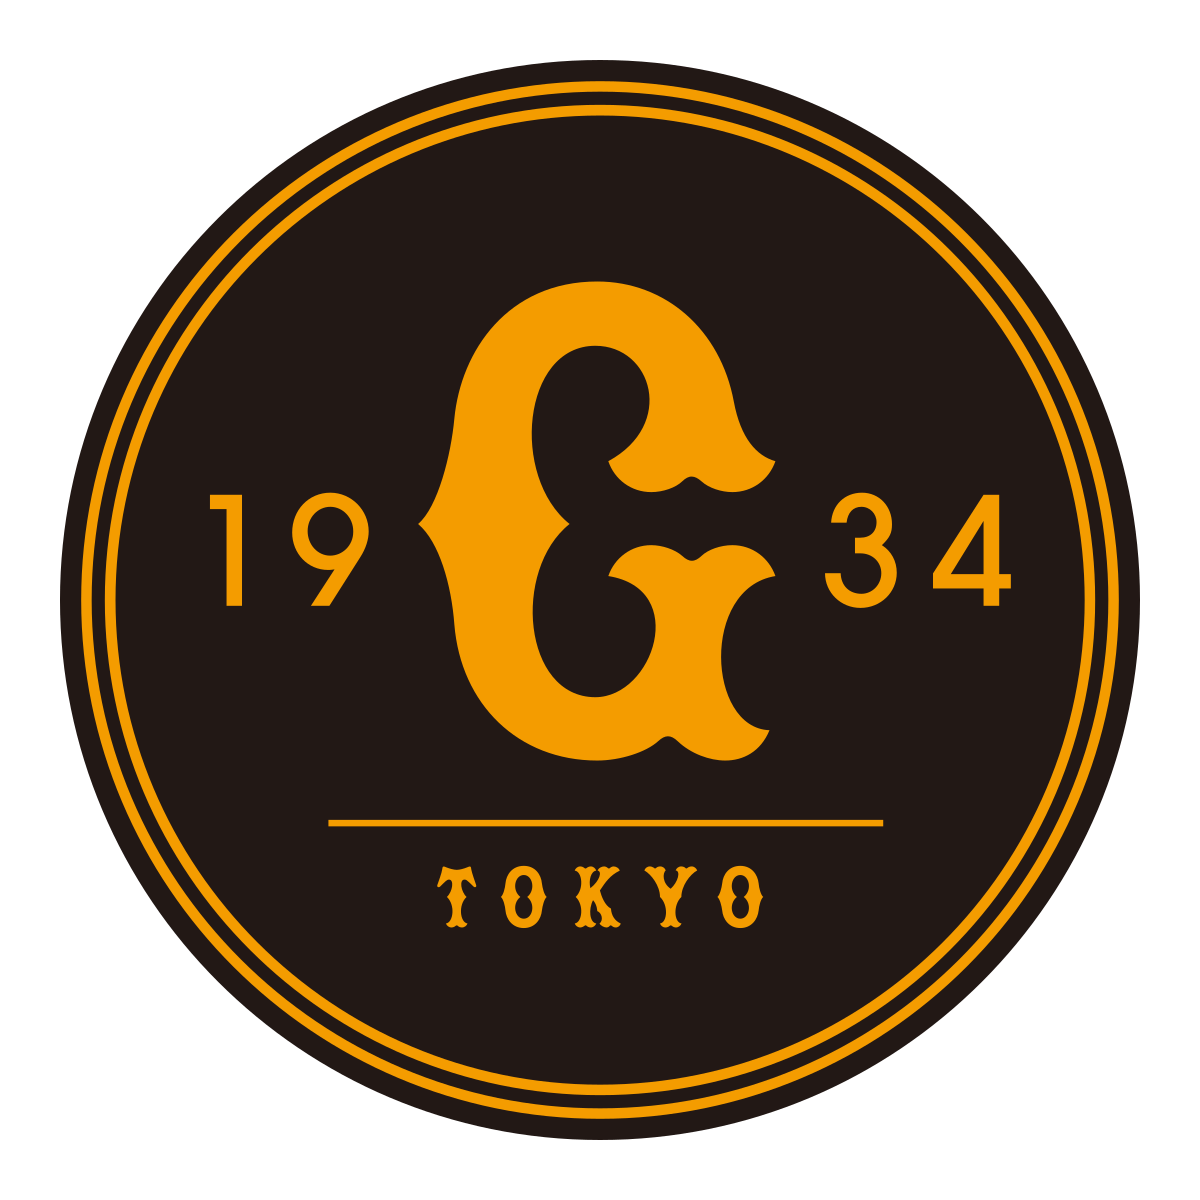 Giants Logo - Yomiuri Giants